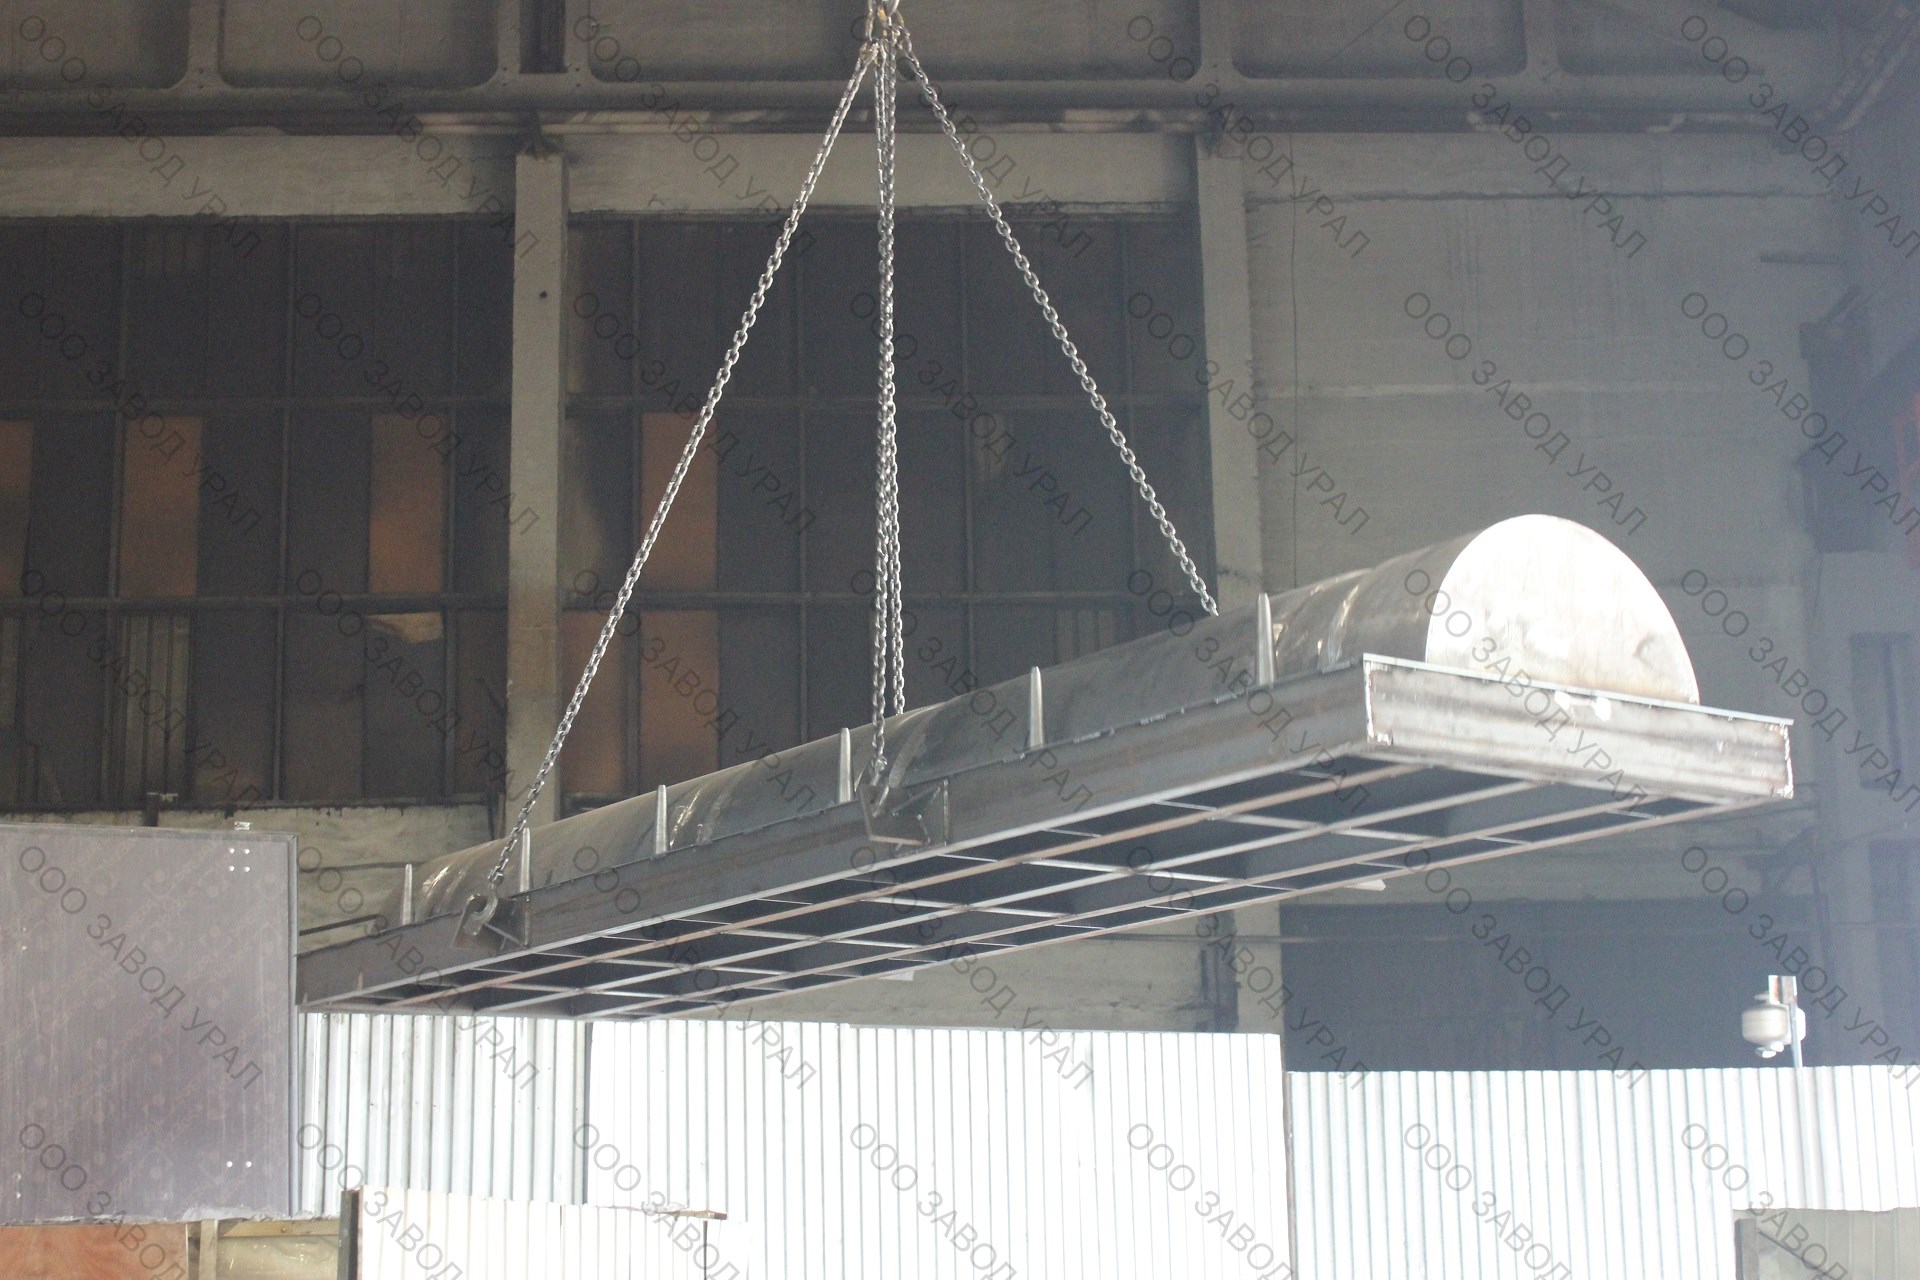 Отгружен комплект металлоформ для производства бетонных утяжелителей для труб УТК